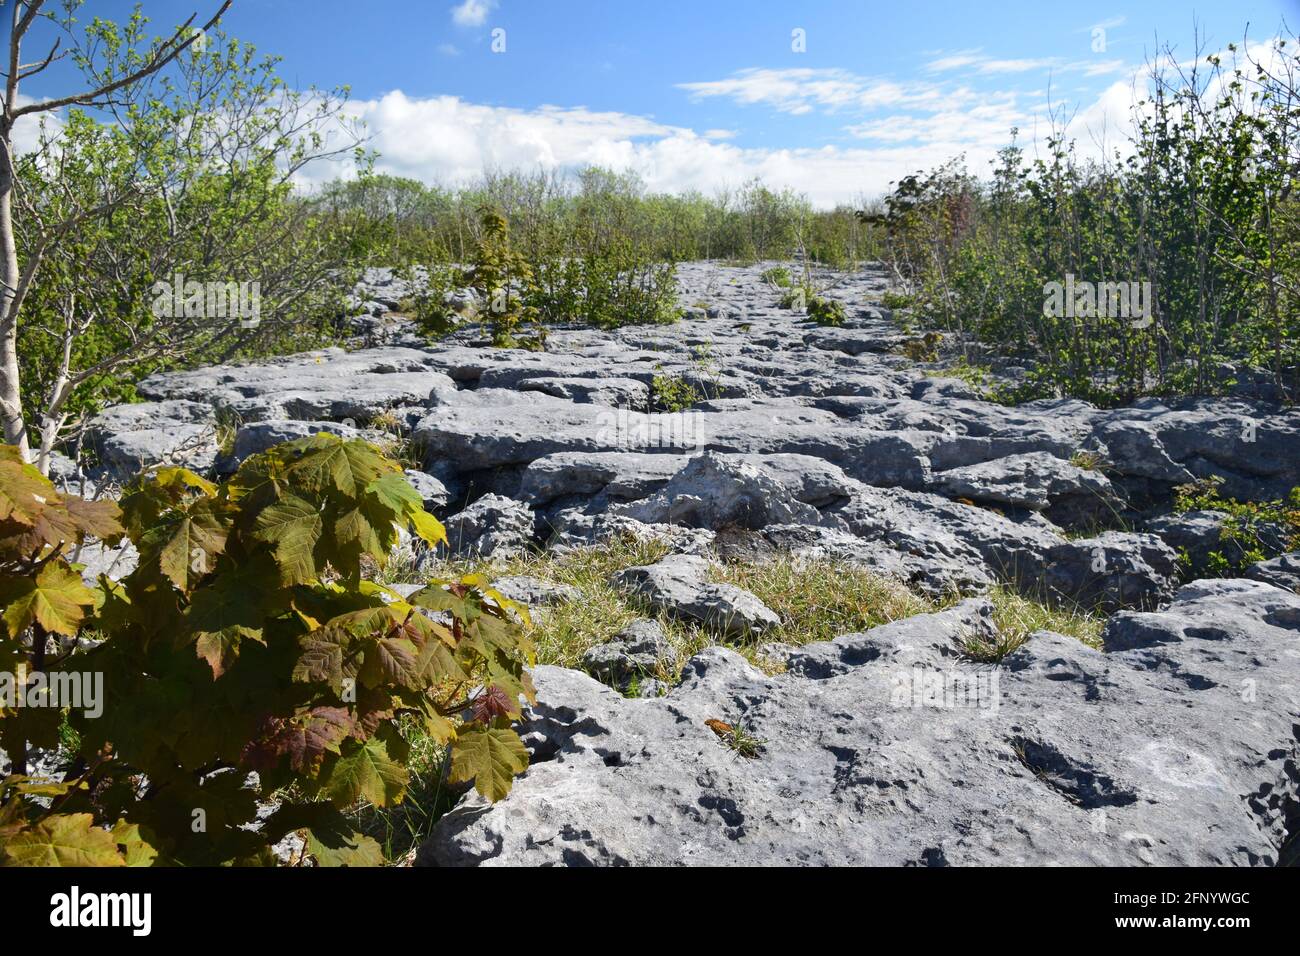 Wunderschöne britische Karbonbon Kalksteinpflaster Landschaft im schönen Frühling sunlite. Stockfoto